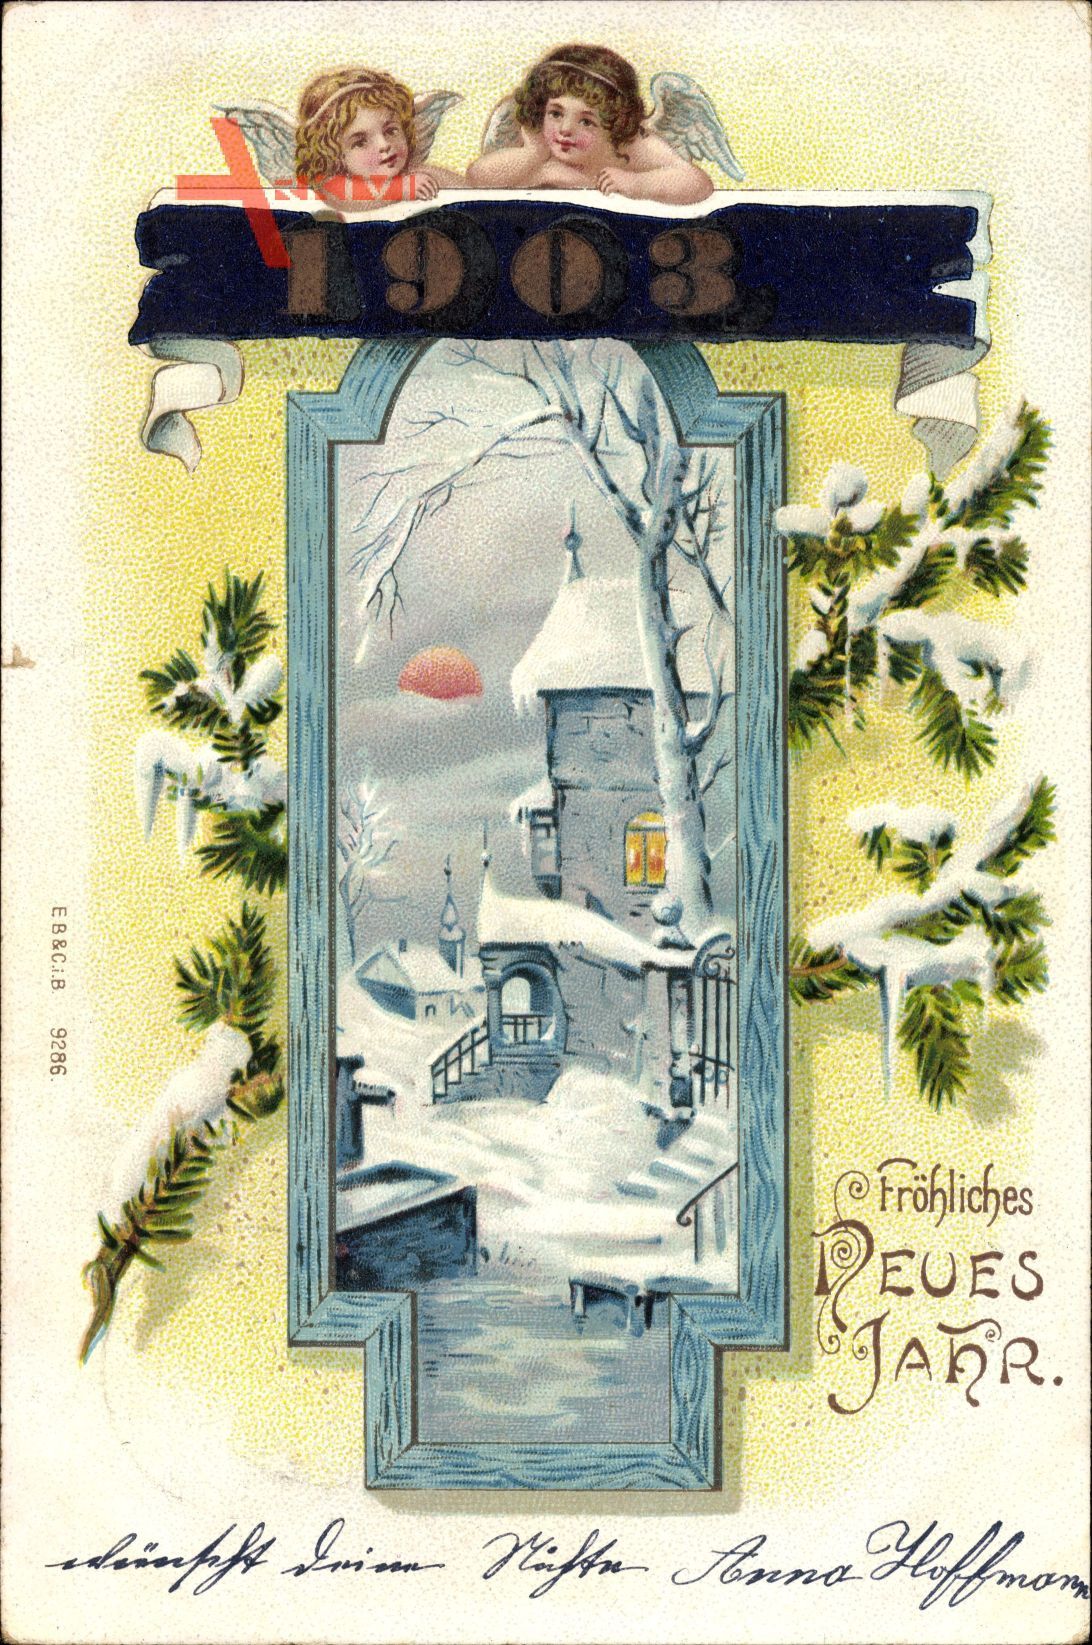 Glückwunsch Neujahr, Jahreszahl 1903, Engel, Ort im Winter